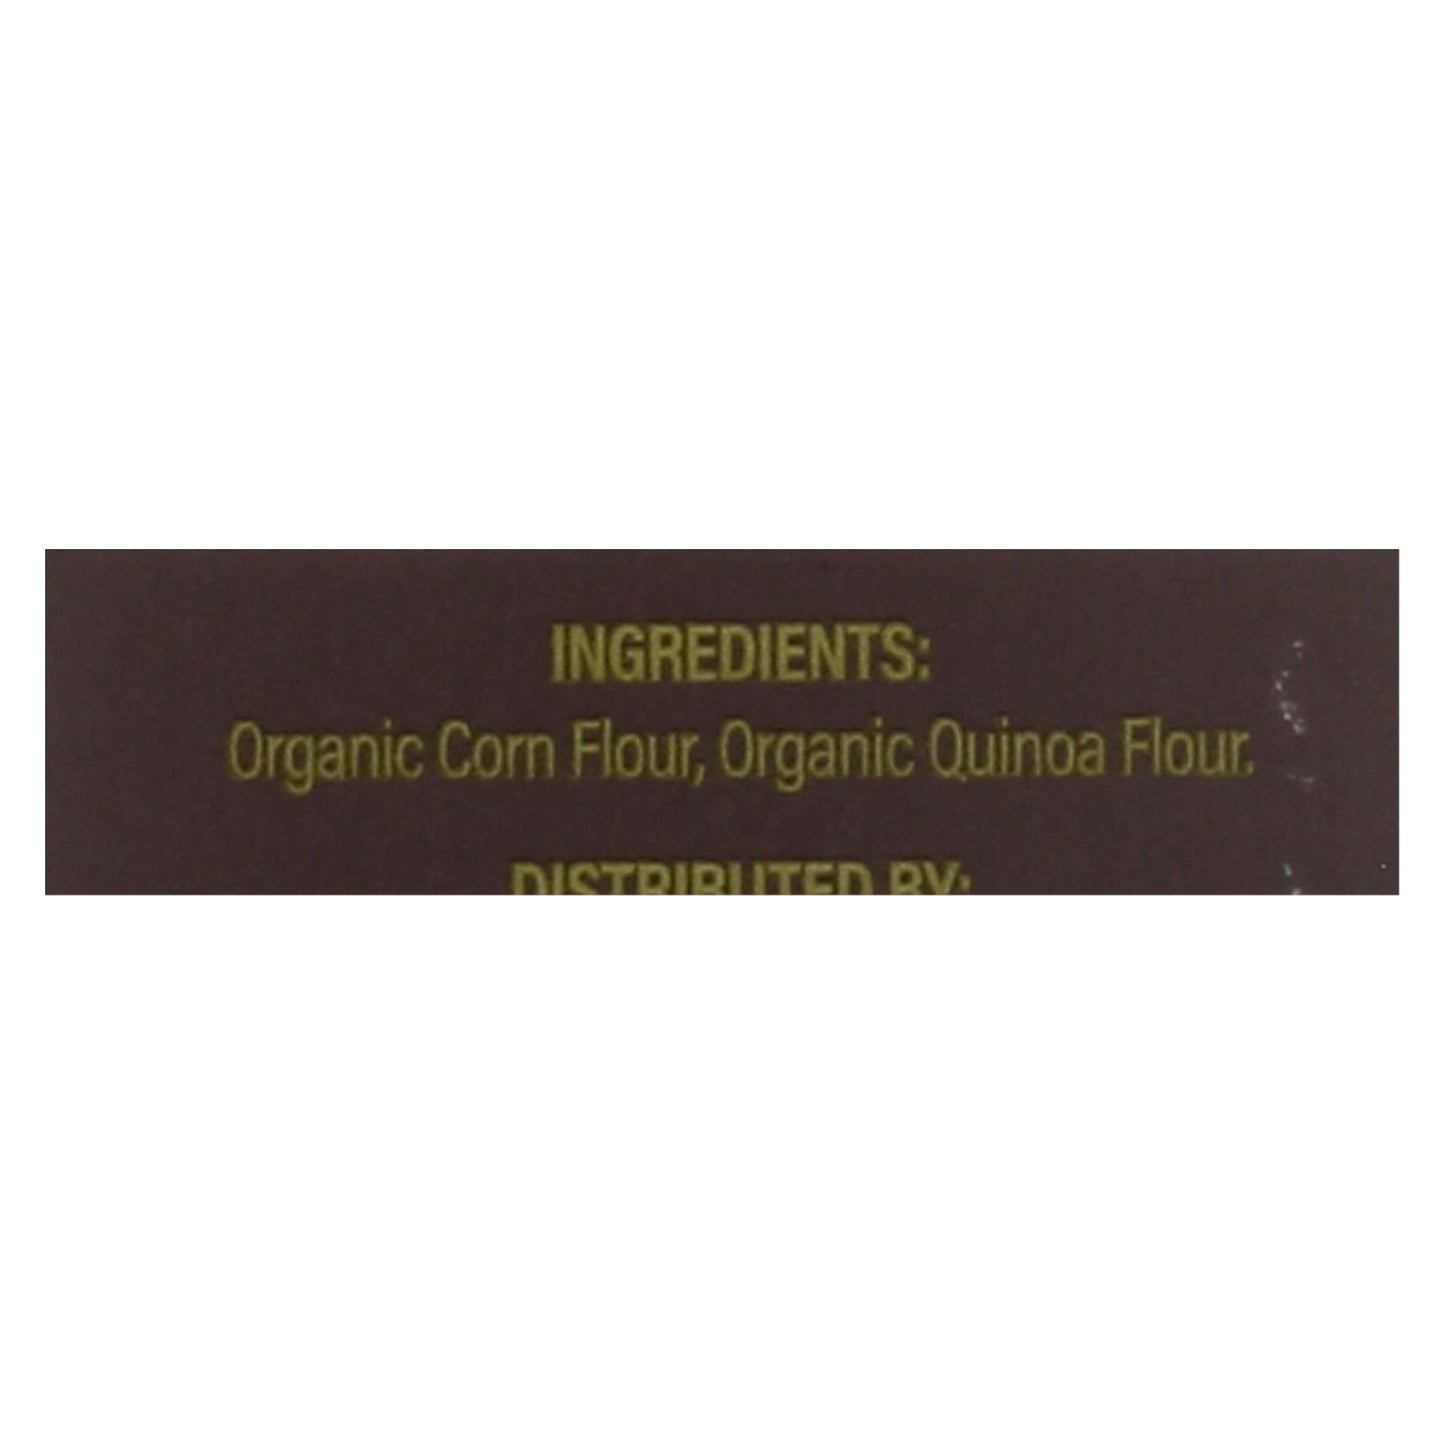 Ancient Harvest Organic Gluten Free Quinoa Supergrain Pasta - Shells - Case Of 12 - 8 Oz